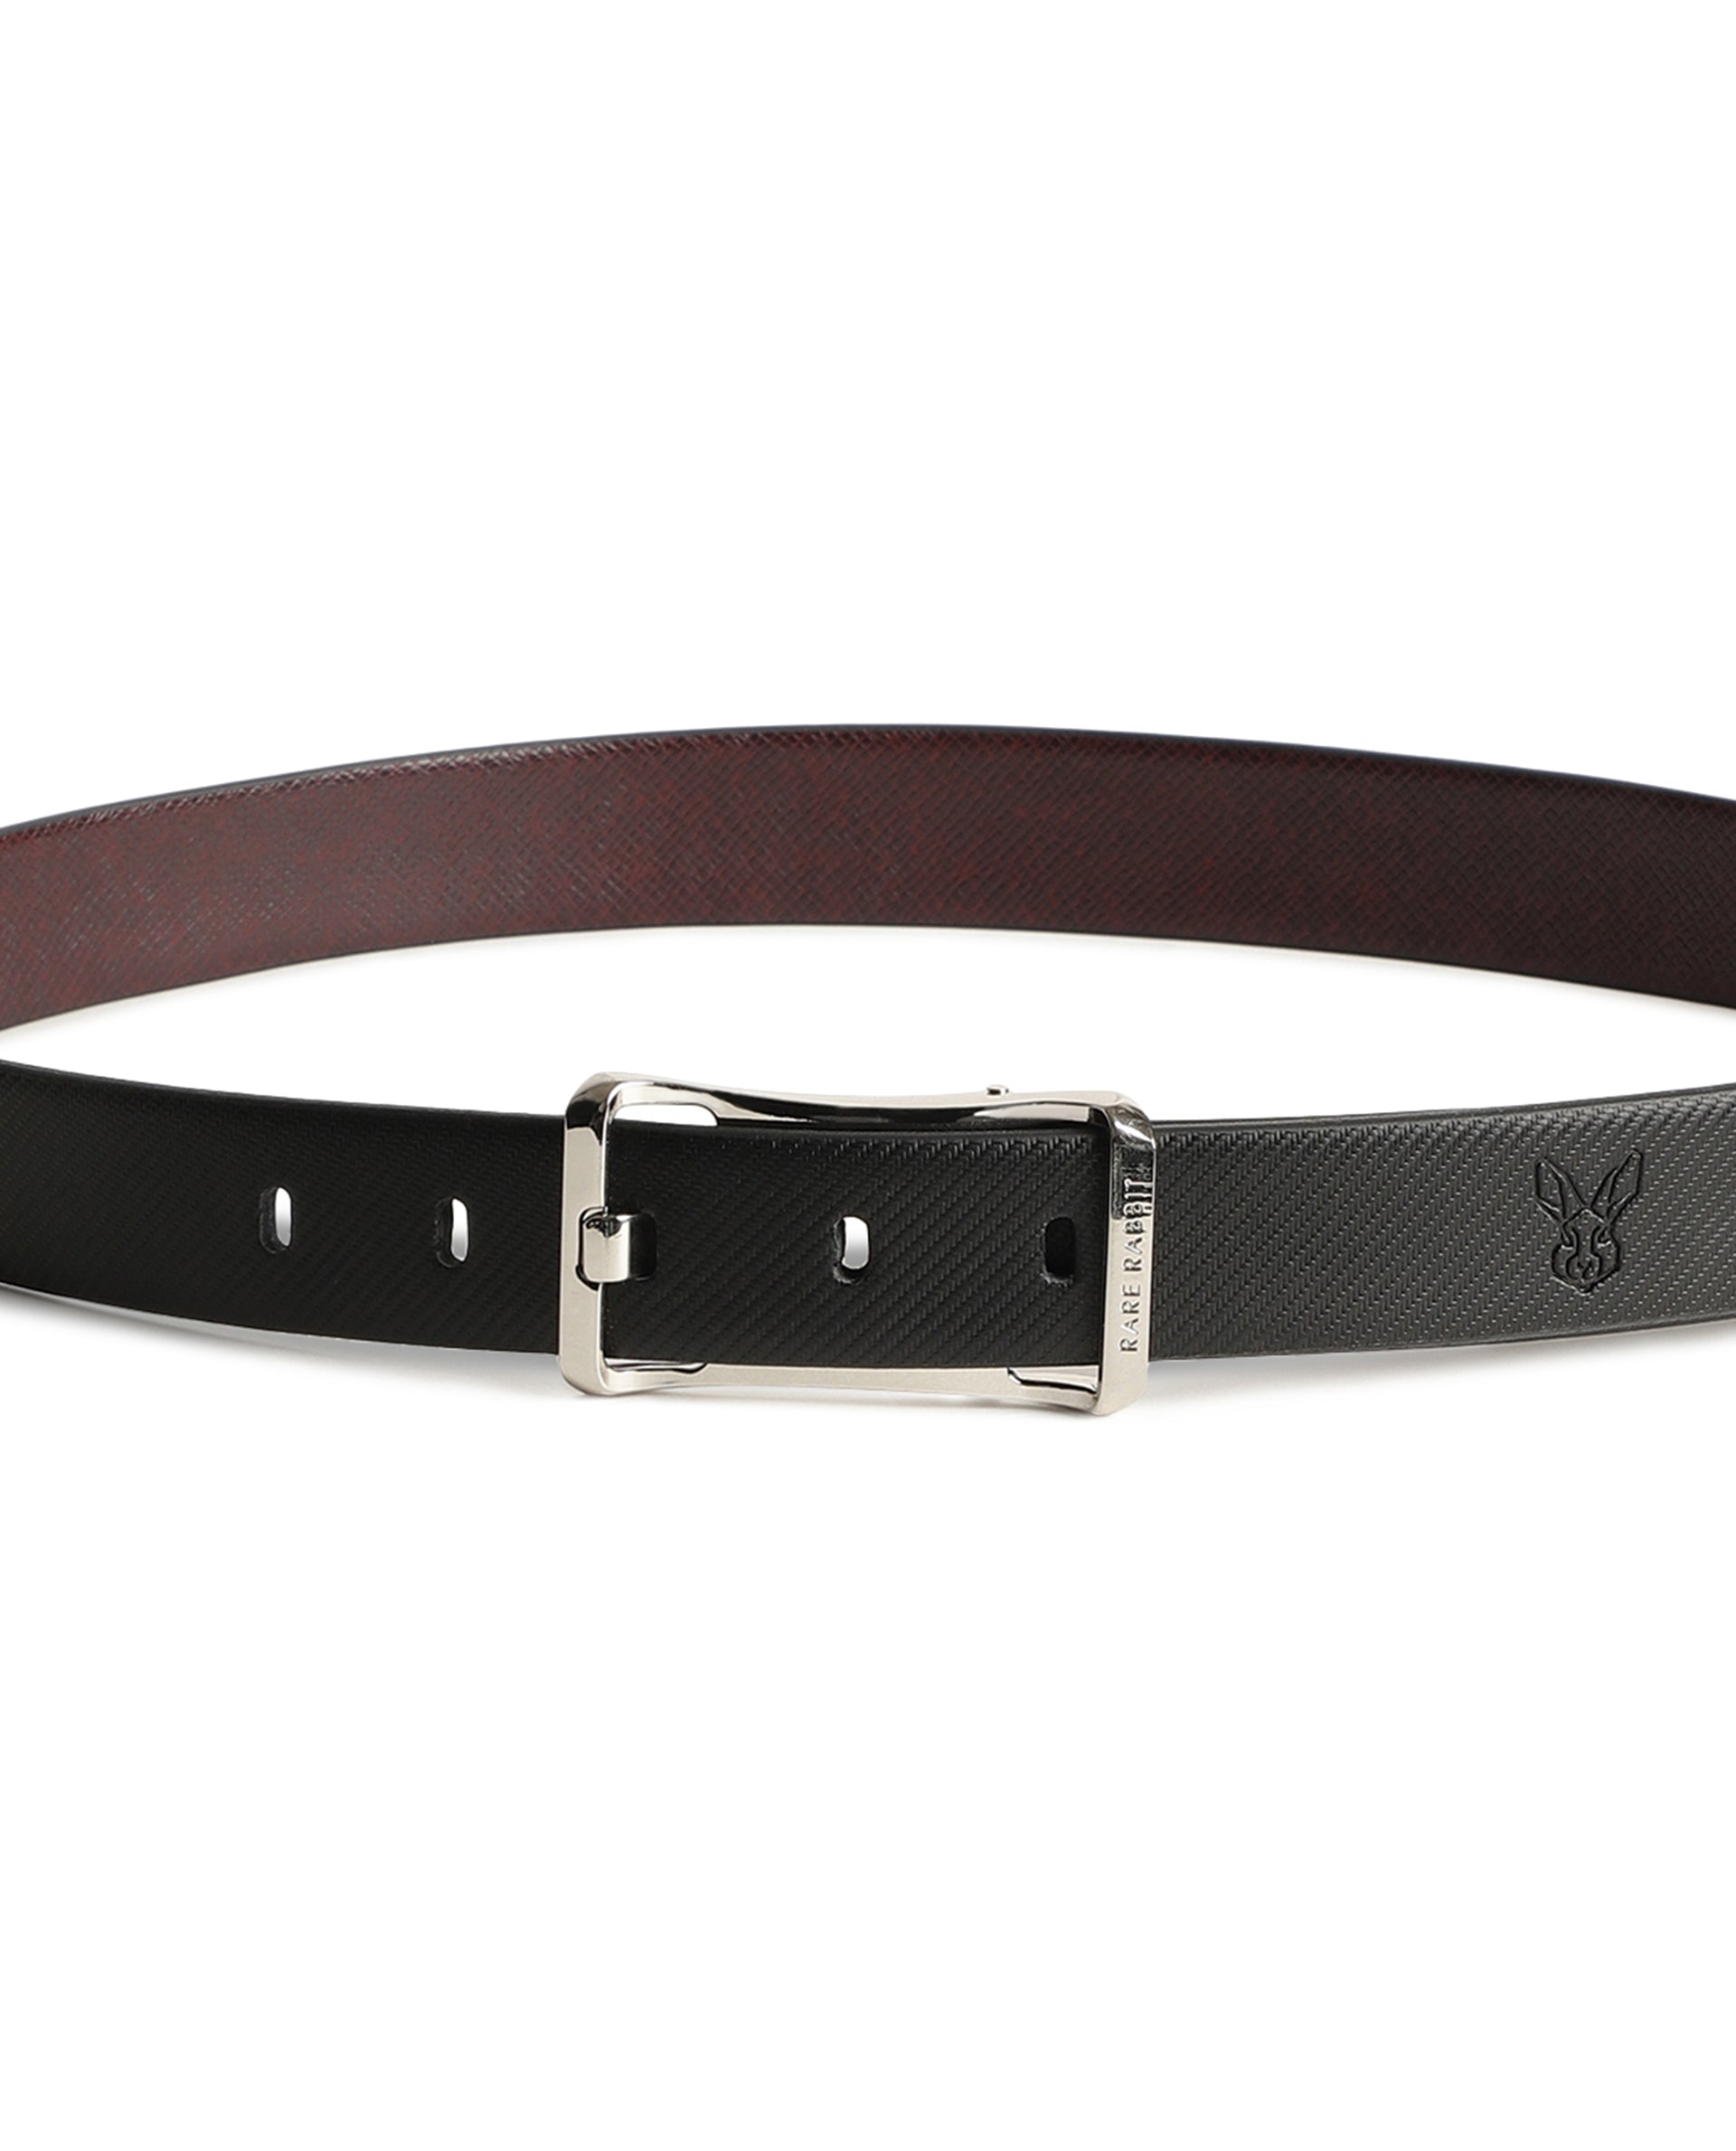 Belts For Men - Buy Belts For Men Online Starting at Just ₹123